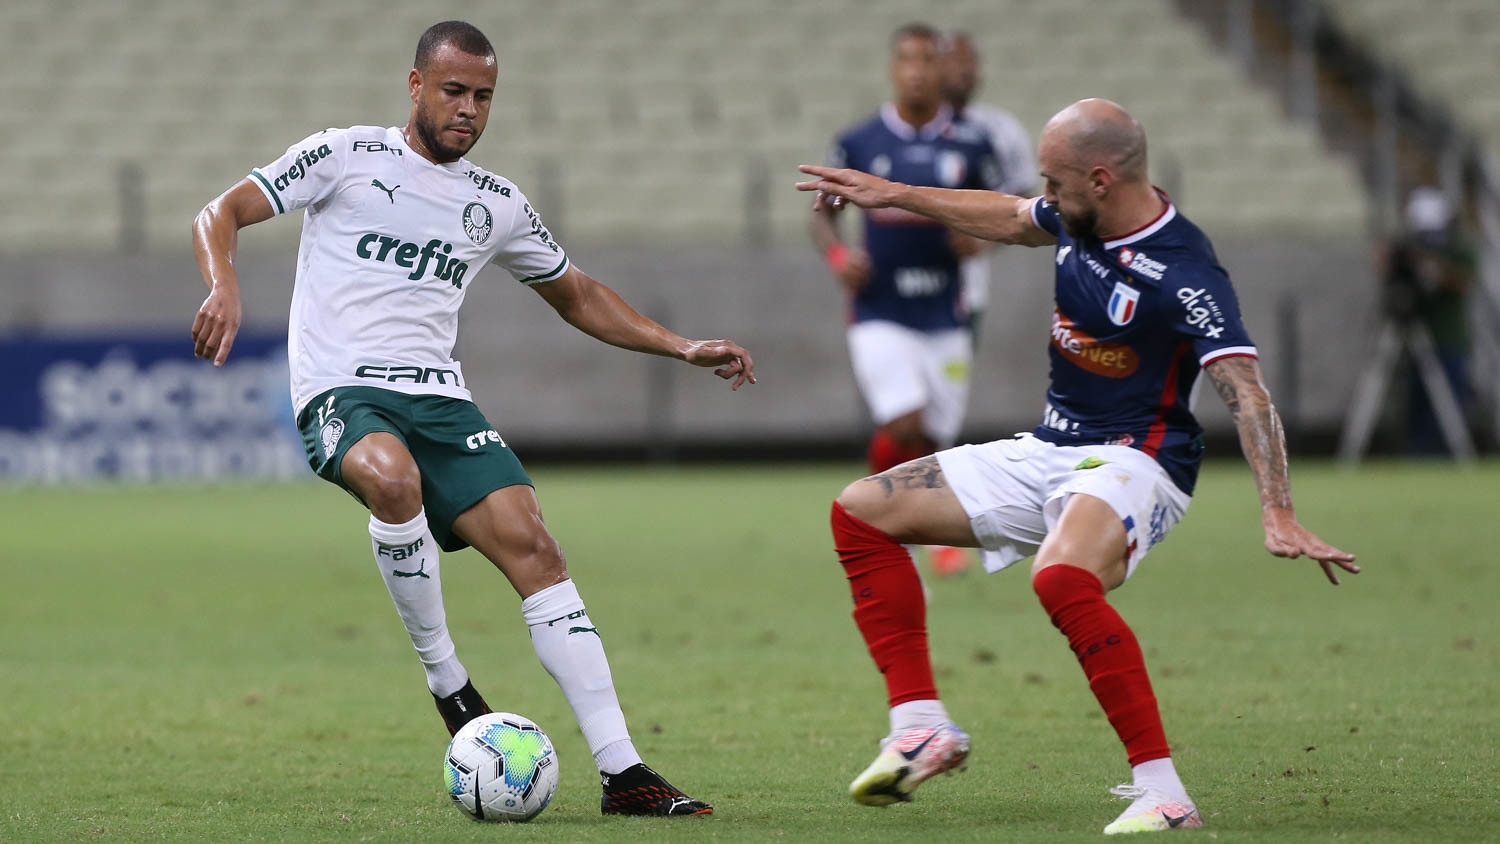 Palmeiras vs AC Goianiense – Nhận định kèo bóng đá 04h00 23/02/2021 – VĐQG Brazil